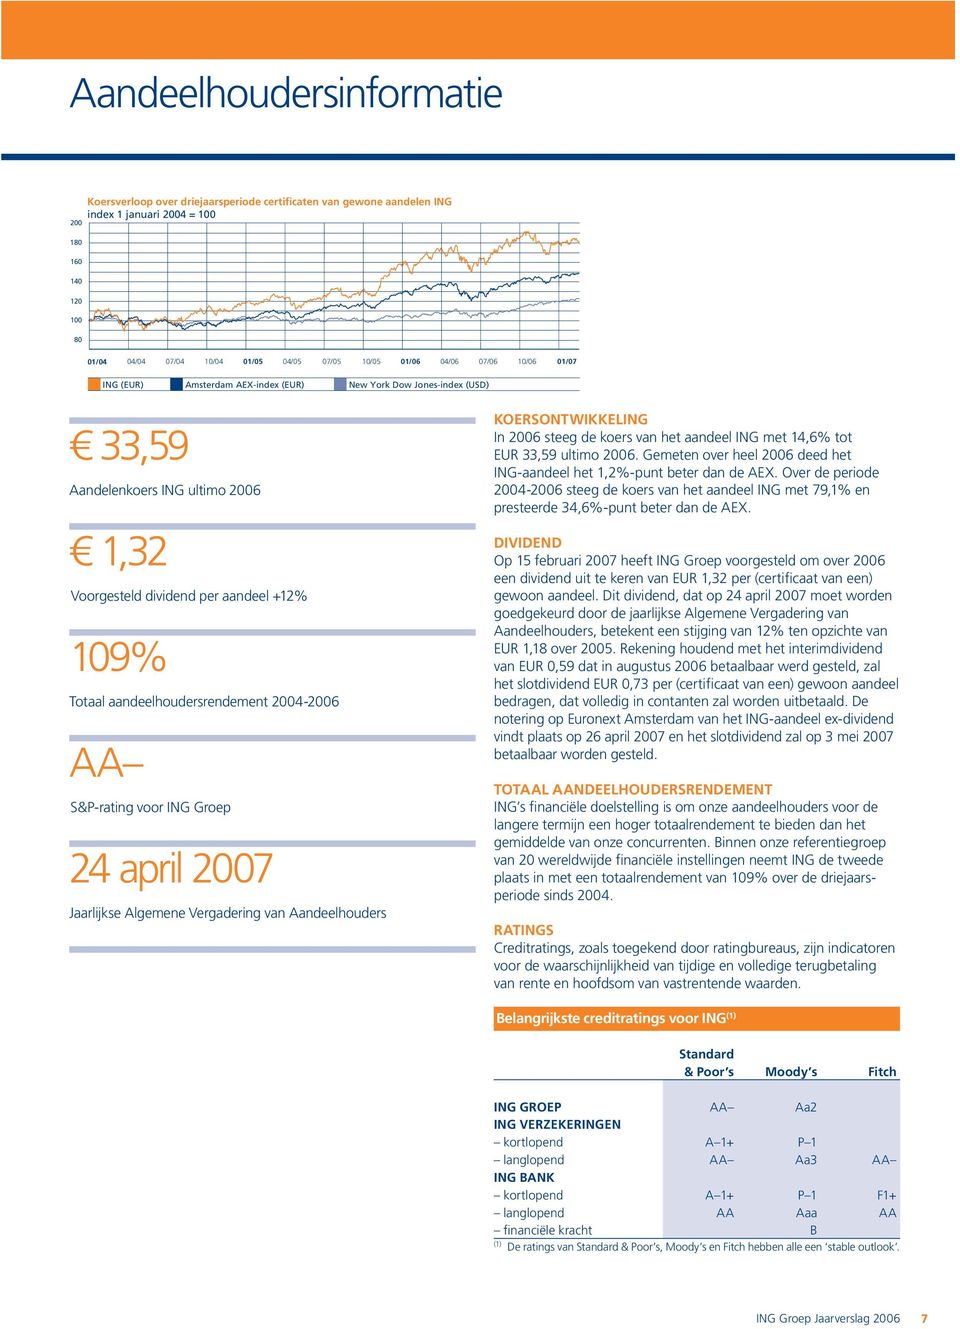 aandeelhoudersrendement 2004-2006 AA S&P-rating voor ING Groep 24 april 2007 Jaarlijkse Algemene Vergadering van Aandeelhouders KOERSONTWIKKELING In 2006 steeg de koers van het aandeel ING met 14,6%